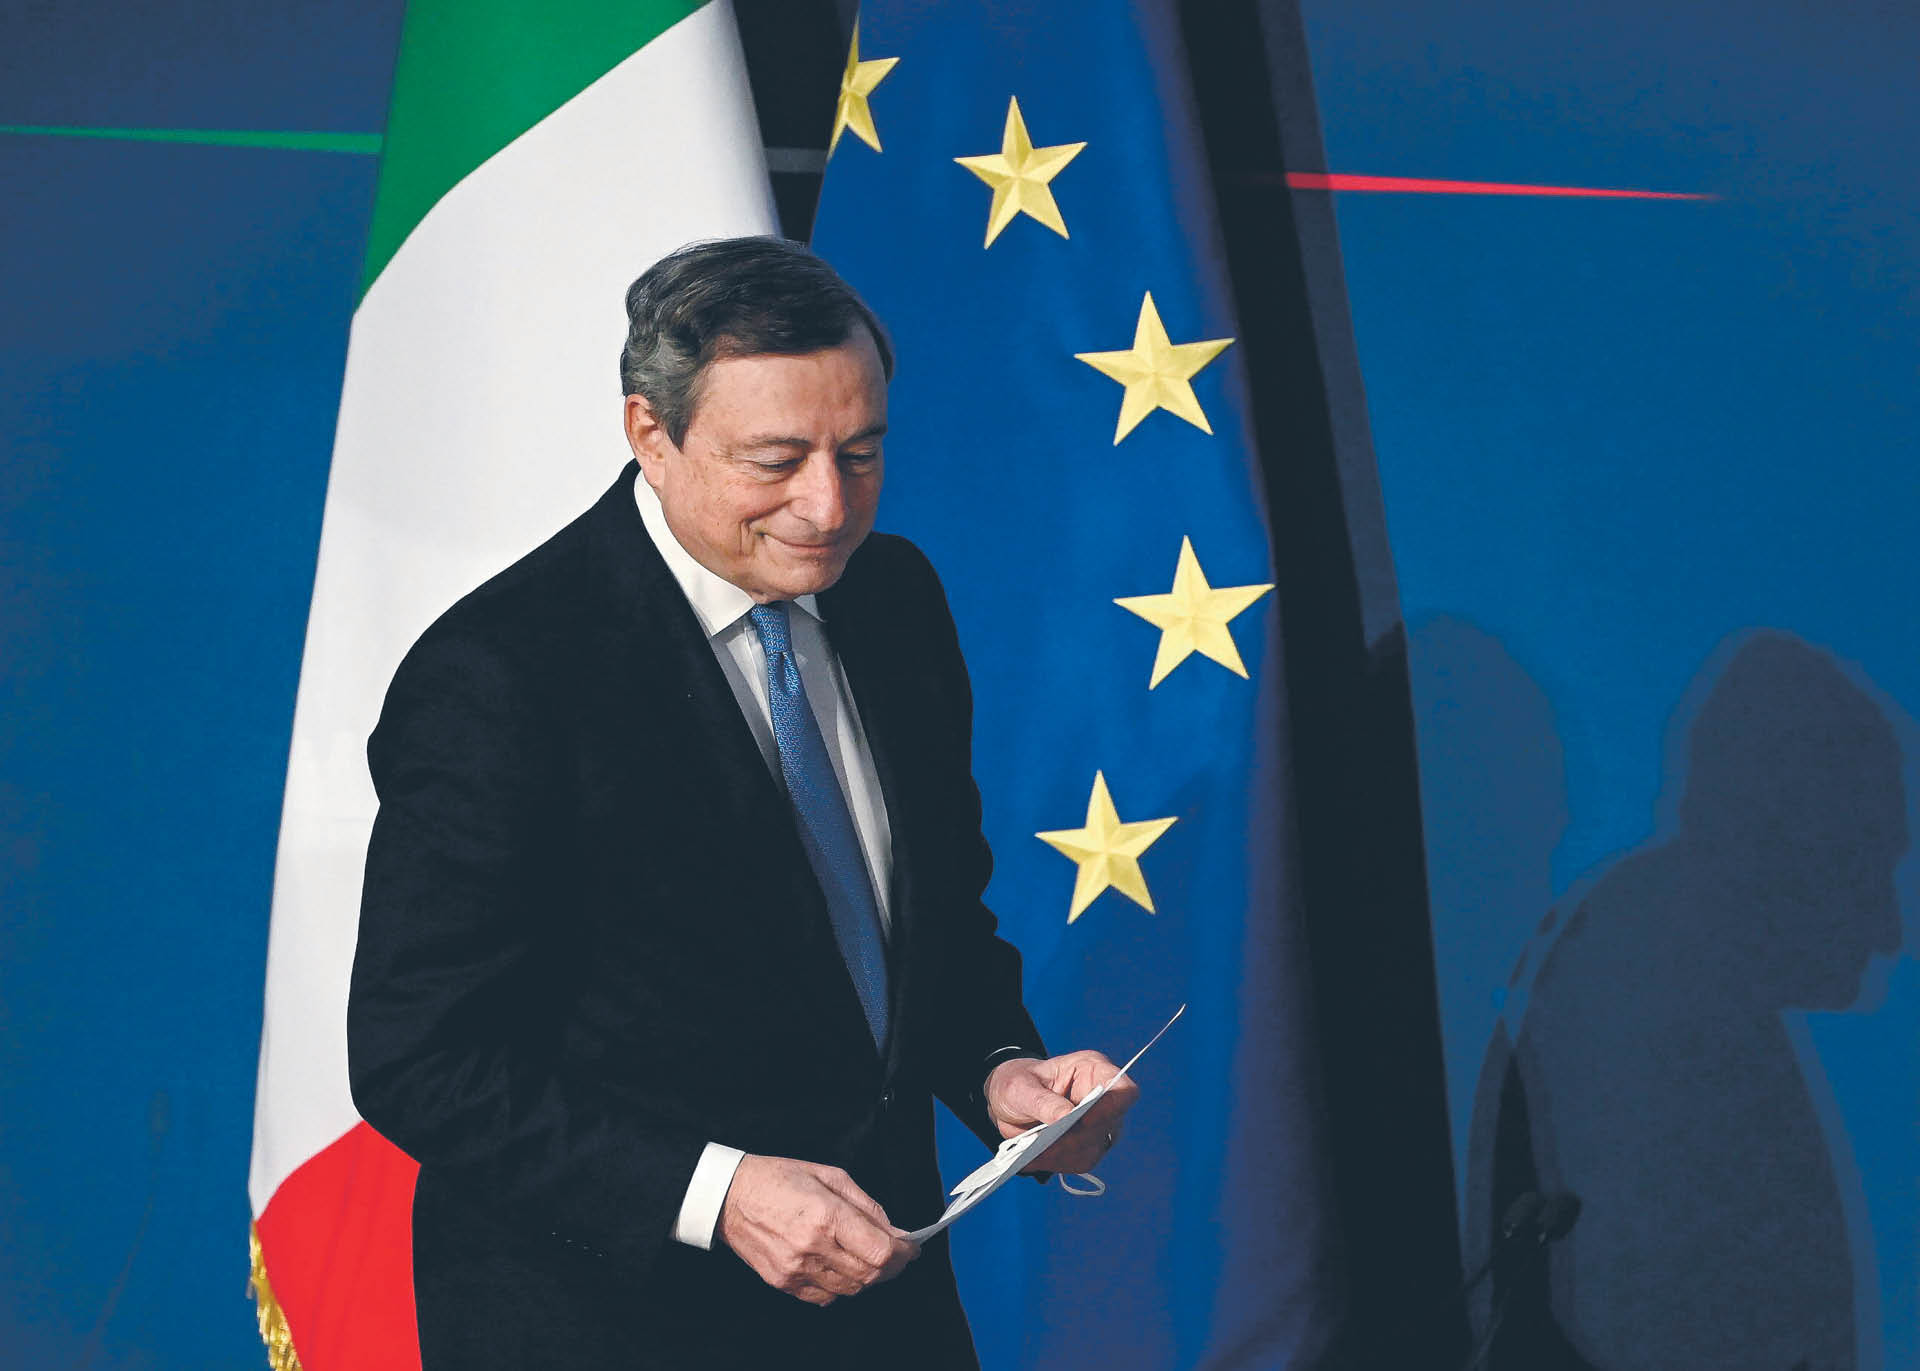 Z perspektywy Draghiego walka o prezydenturę może być najrozsądniejszym posunięciem. Media wróżą, że szeroka koalicja upadnie wraz z początkiem kampanii wyborczej